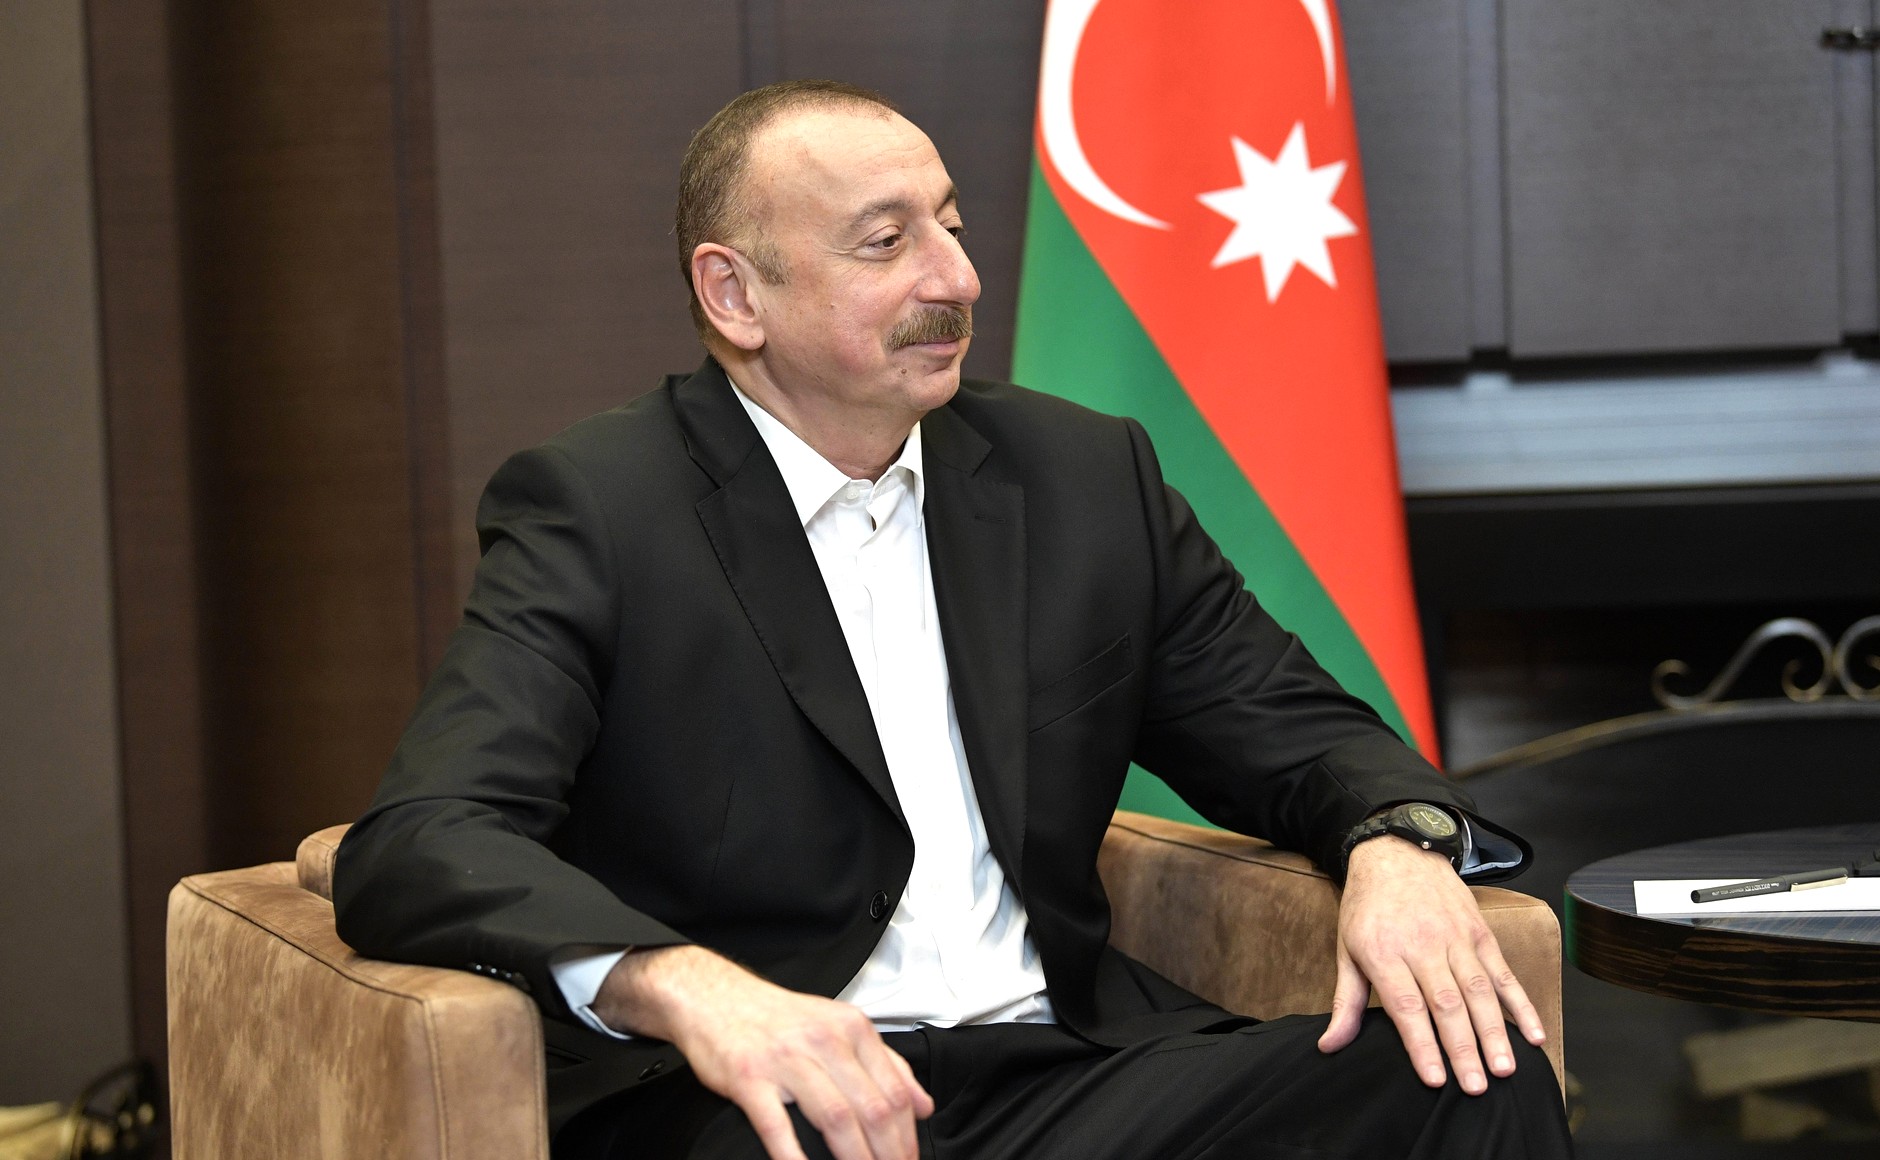 Azərbaycan prezidenti İlham Əliyevin doğum günüdür